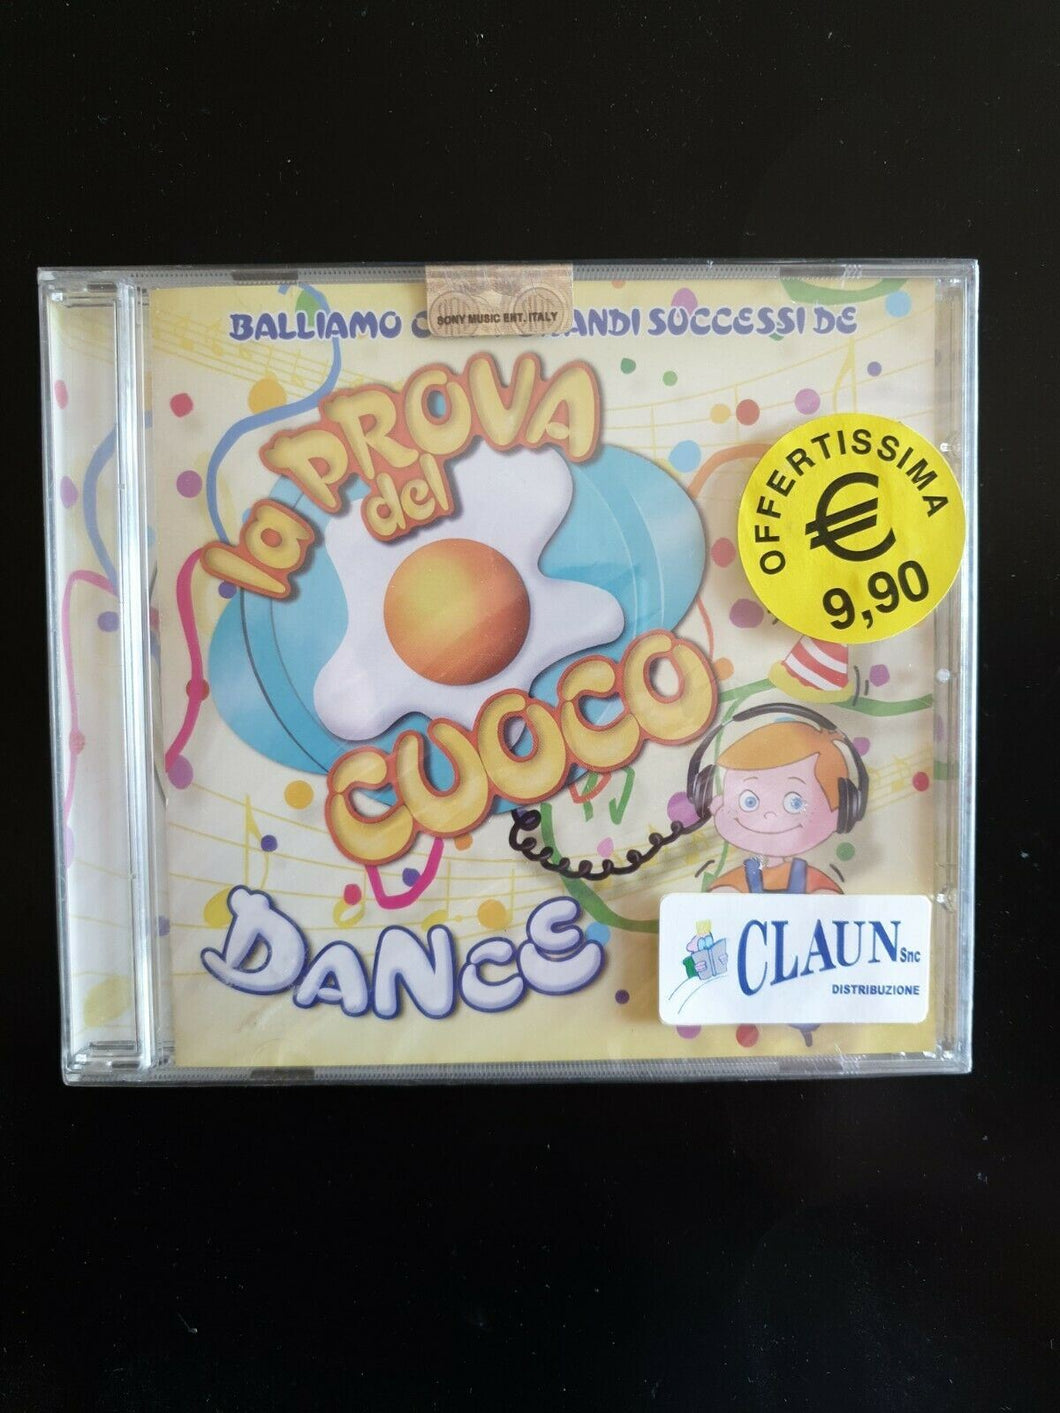 La Prova Del Cuoco Dance - Balliamo con i Grandi Successi  CD Nuovo